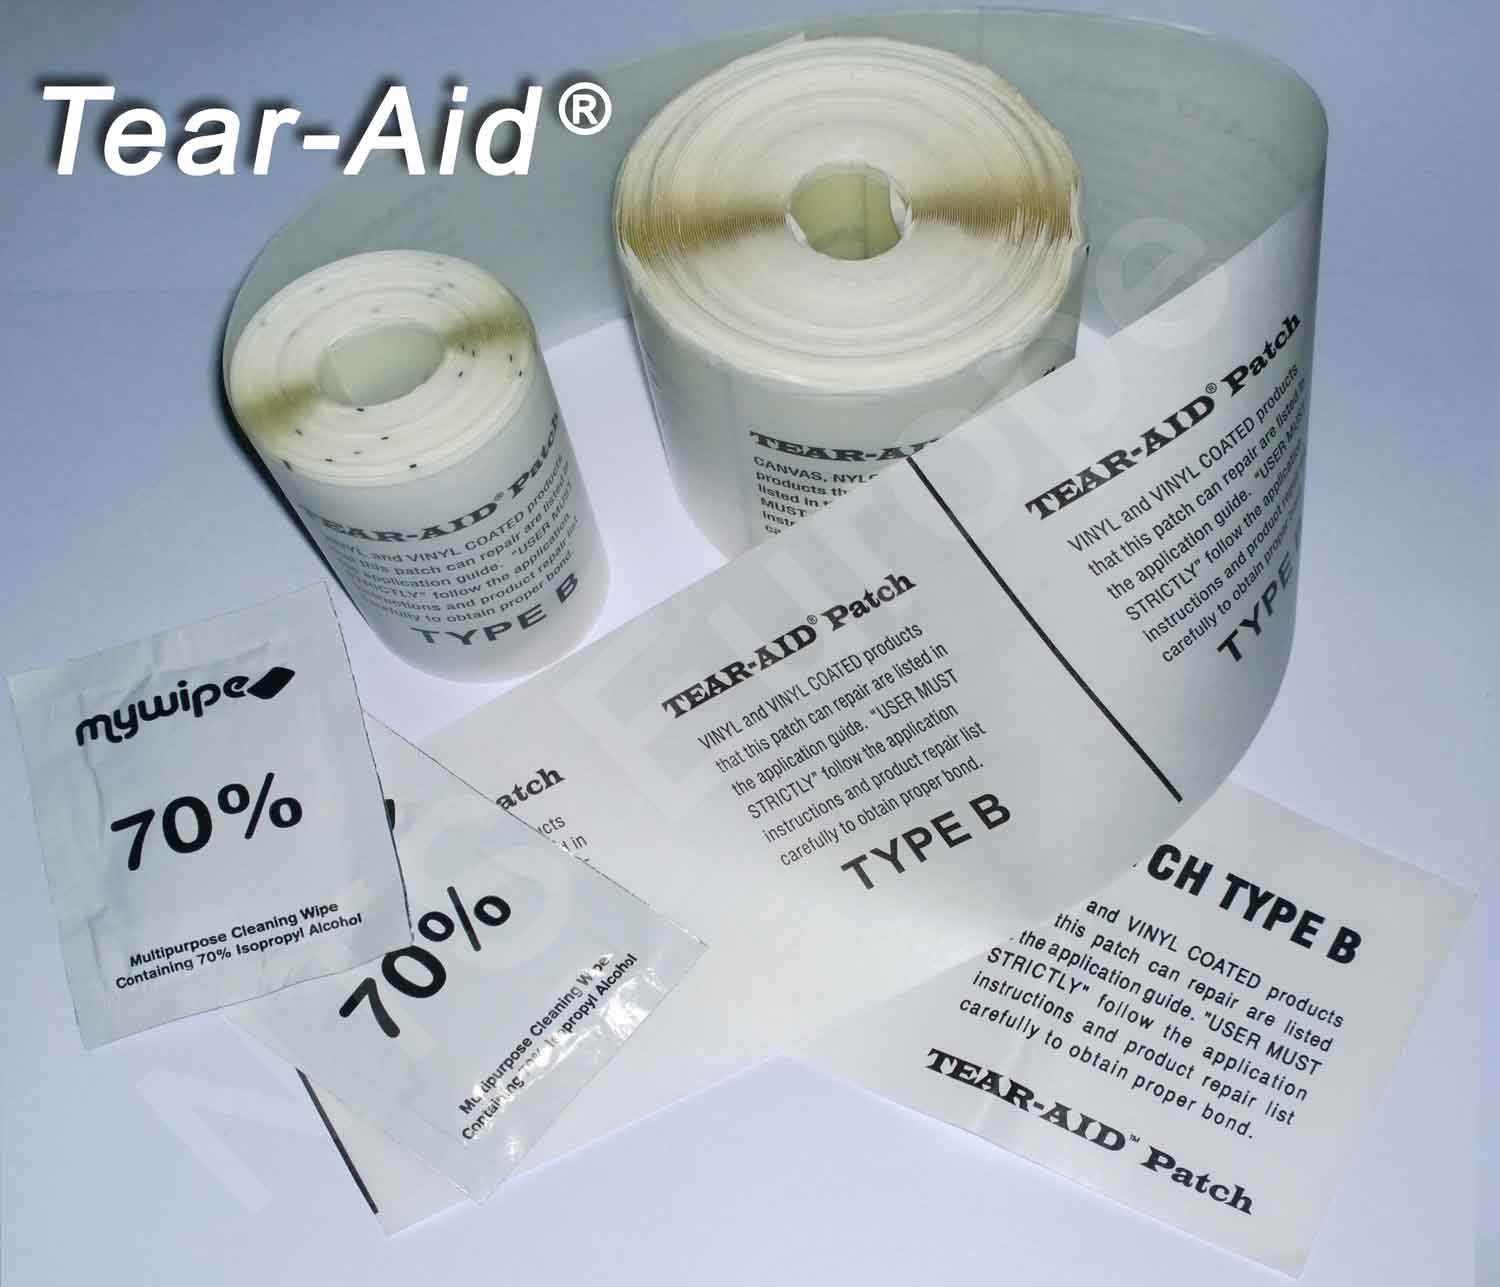 Tear-Aid Type B sur mesure pour une réparation tout en réalisant d'importantes économies